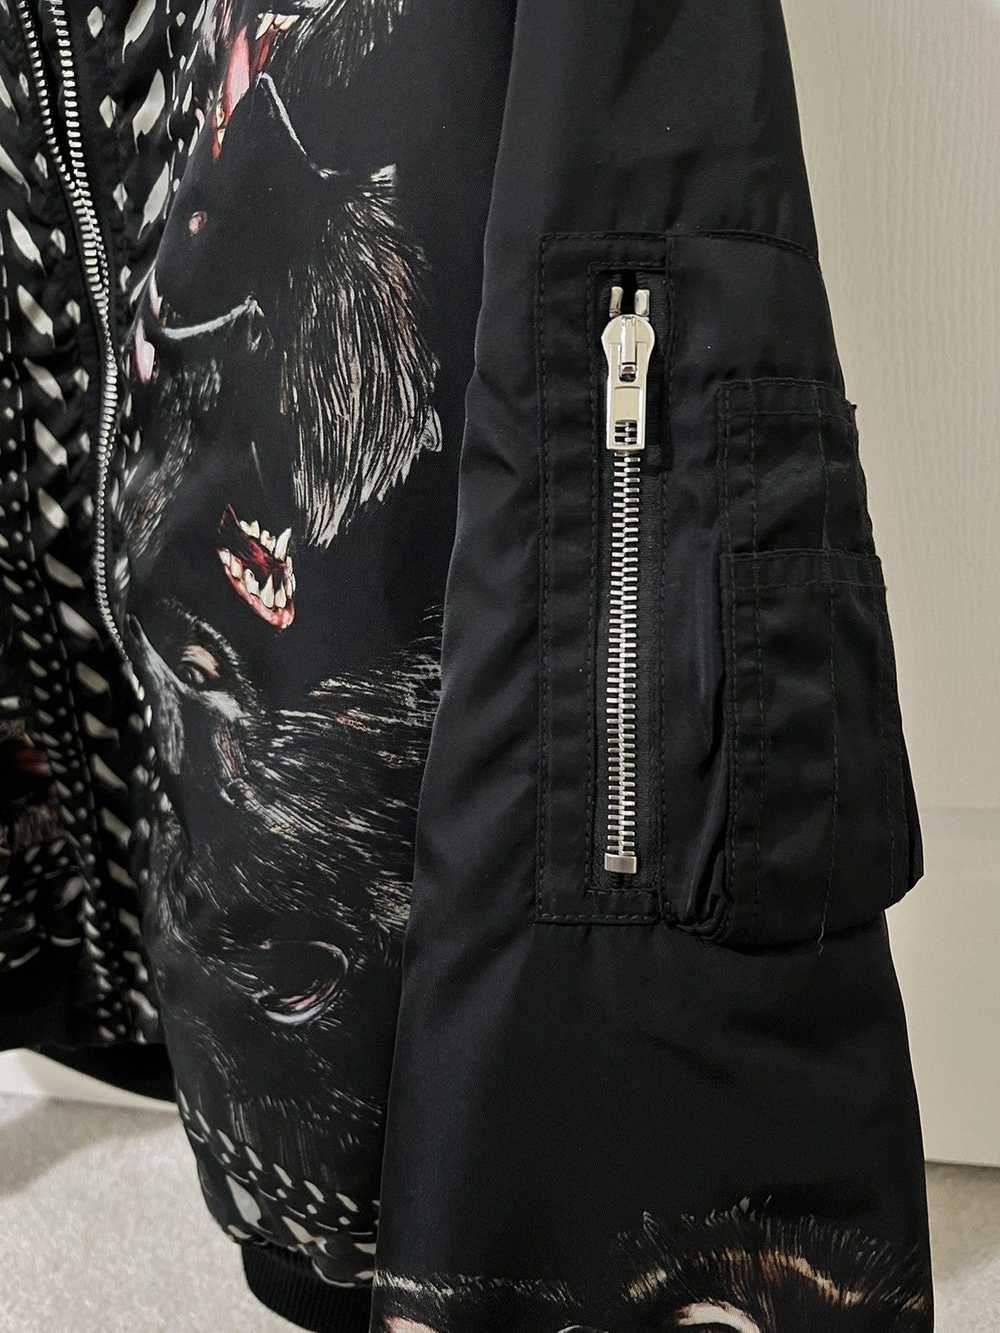 Givenchy Givenchy monkey bomber jacket - image 5